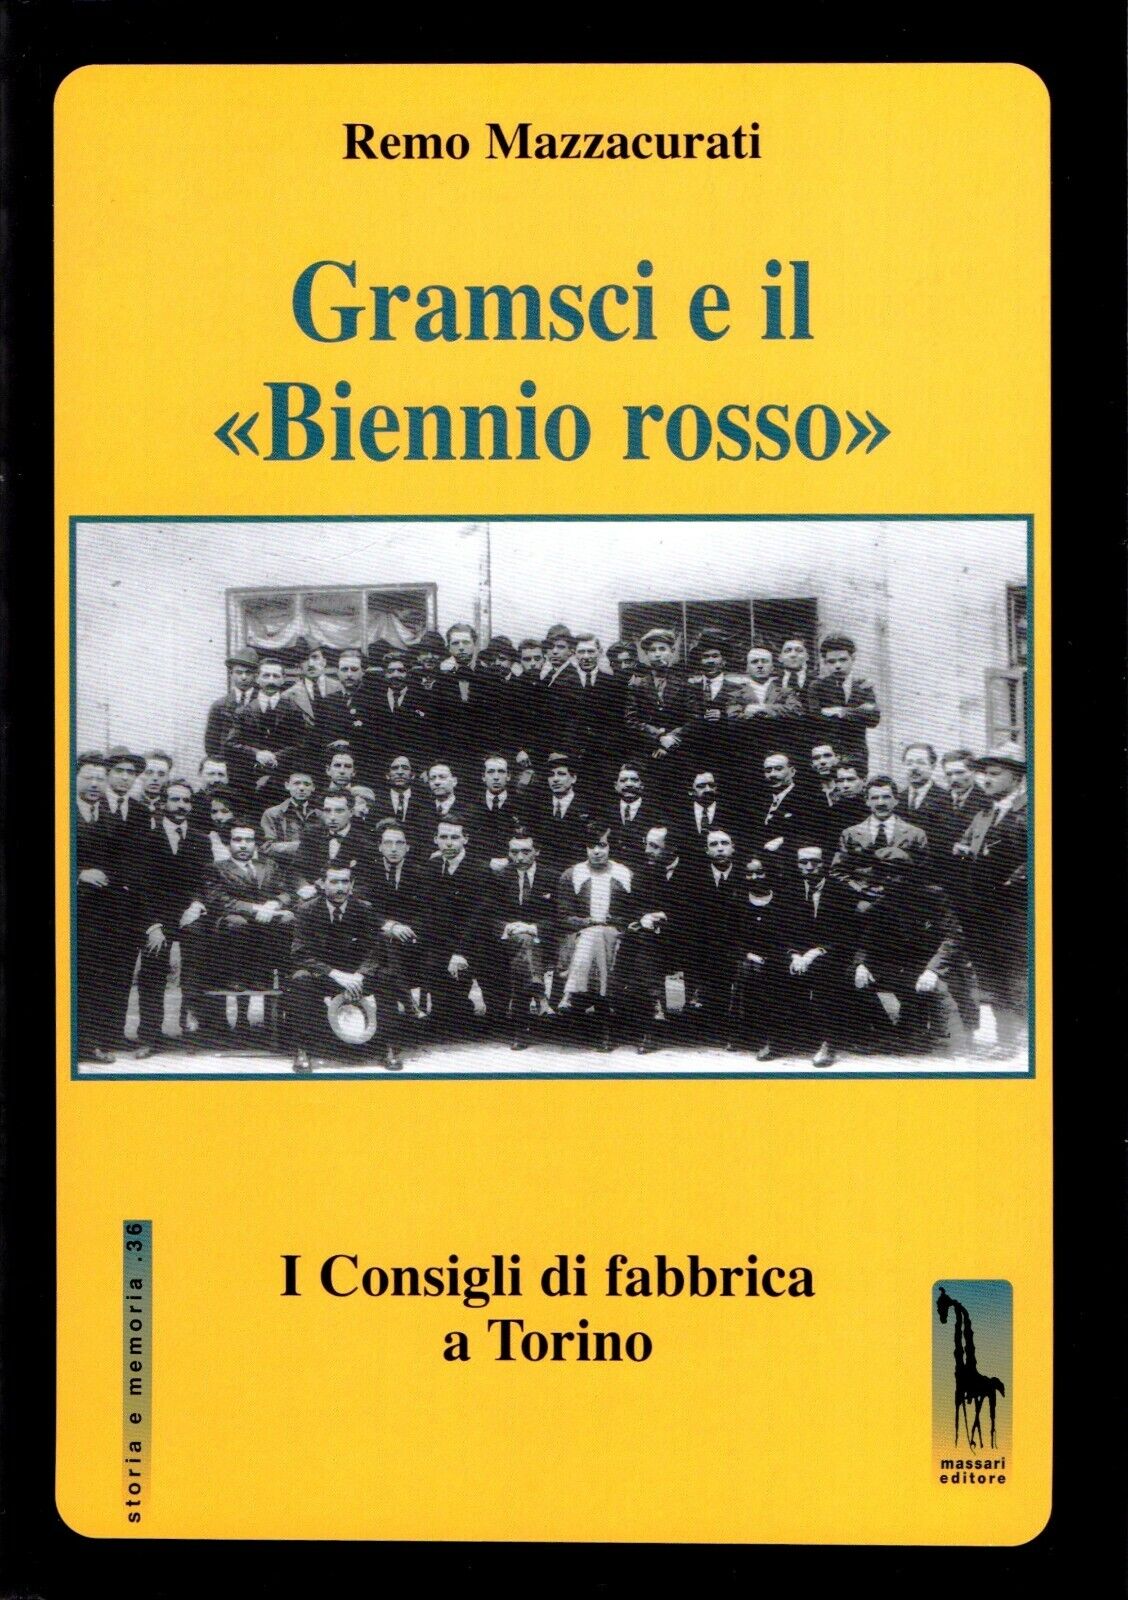 Gramsci e il Biennio rosso i Consigli di fabbrica a Torino di Remo Mazzacurati,  libro usato